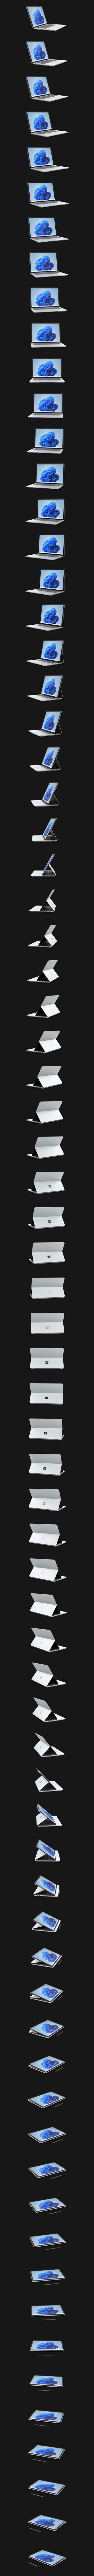 Surface Laptop Studio dreht sich um 360 Grad.